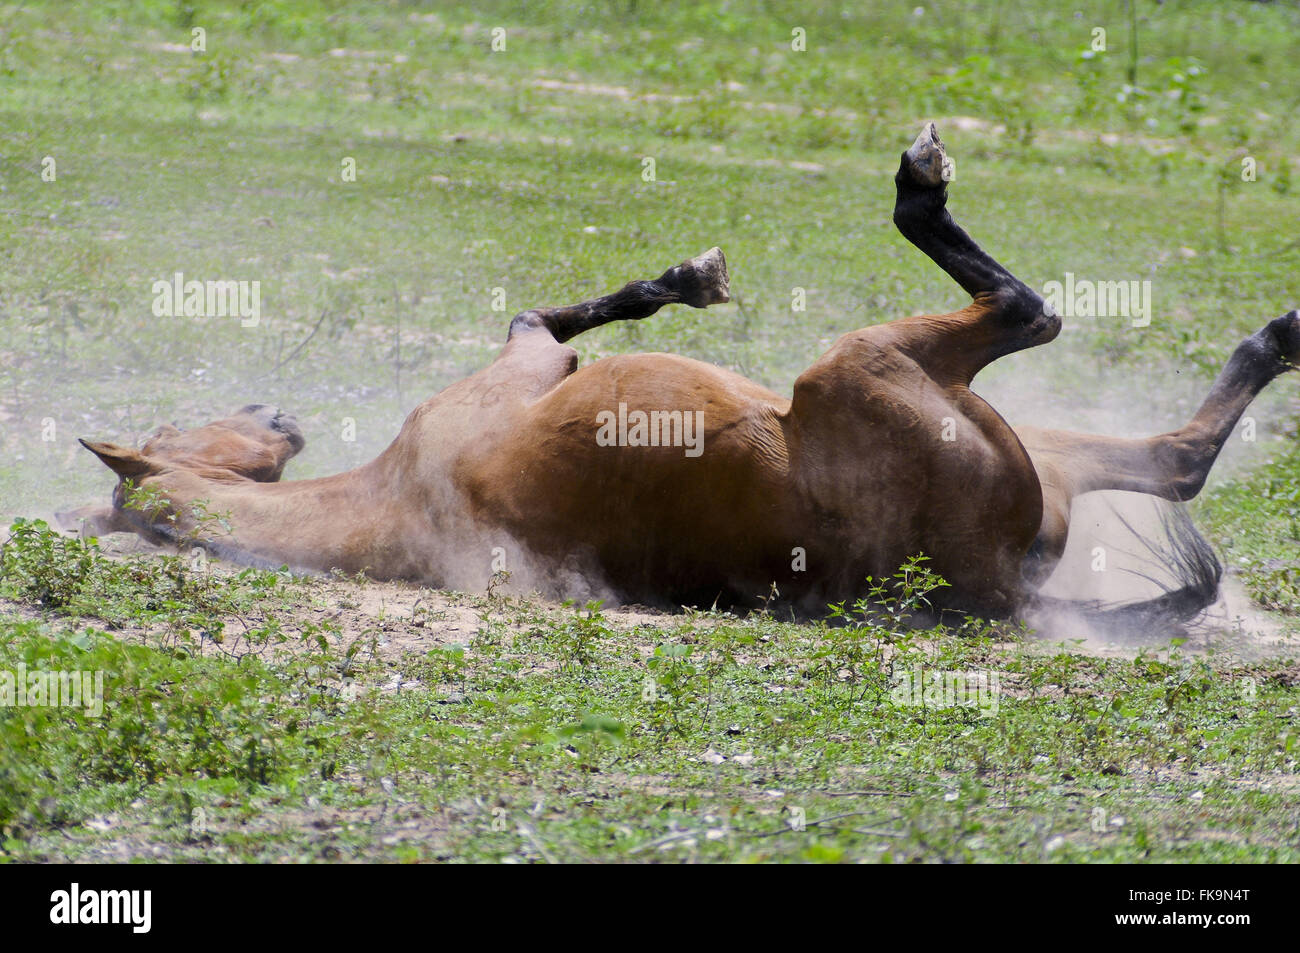 Caballo rodando en el suelo - una de las tres subespecies de especies modernas Equus ferus Foto de stock